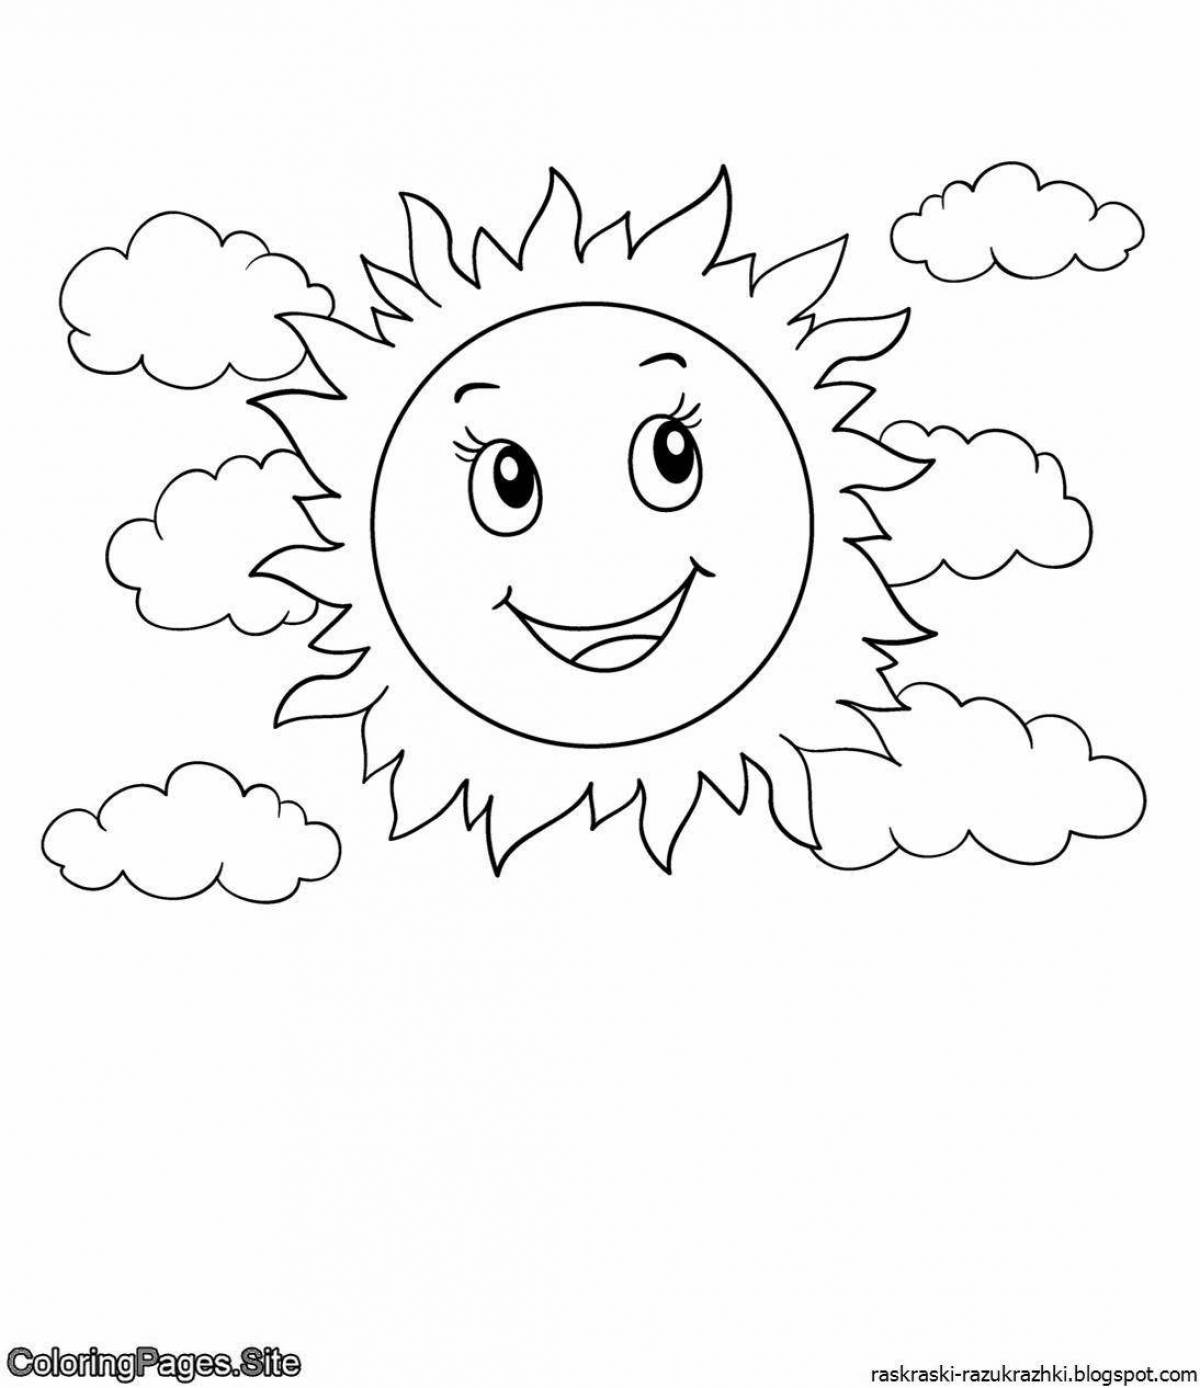 Веселая раскраска солнышко для детей 3-4 лет